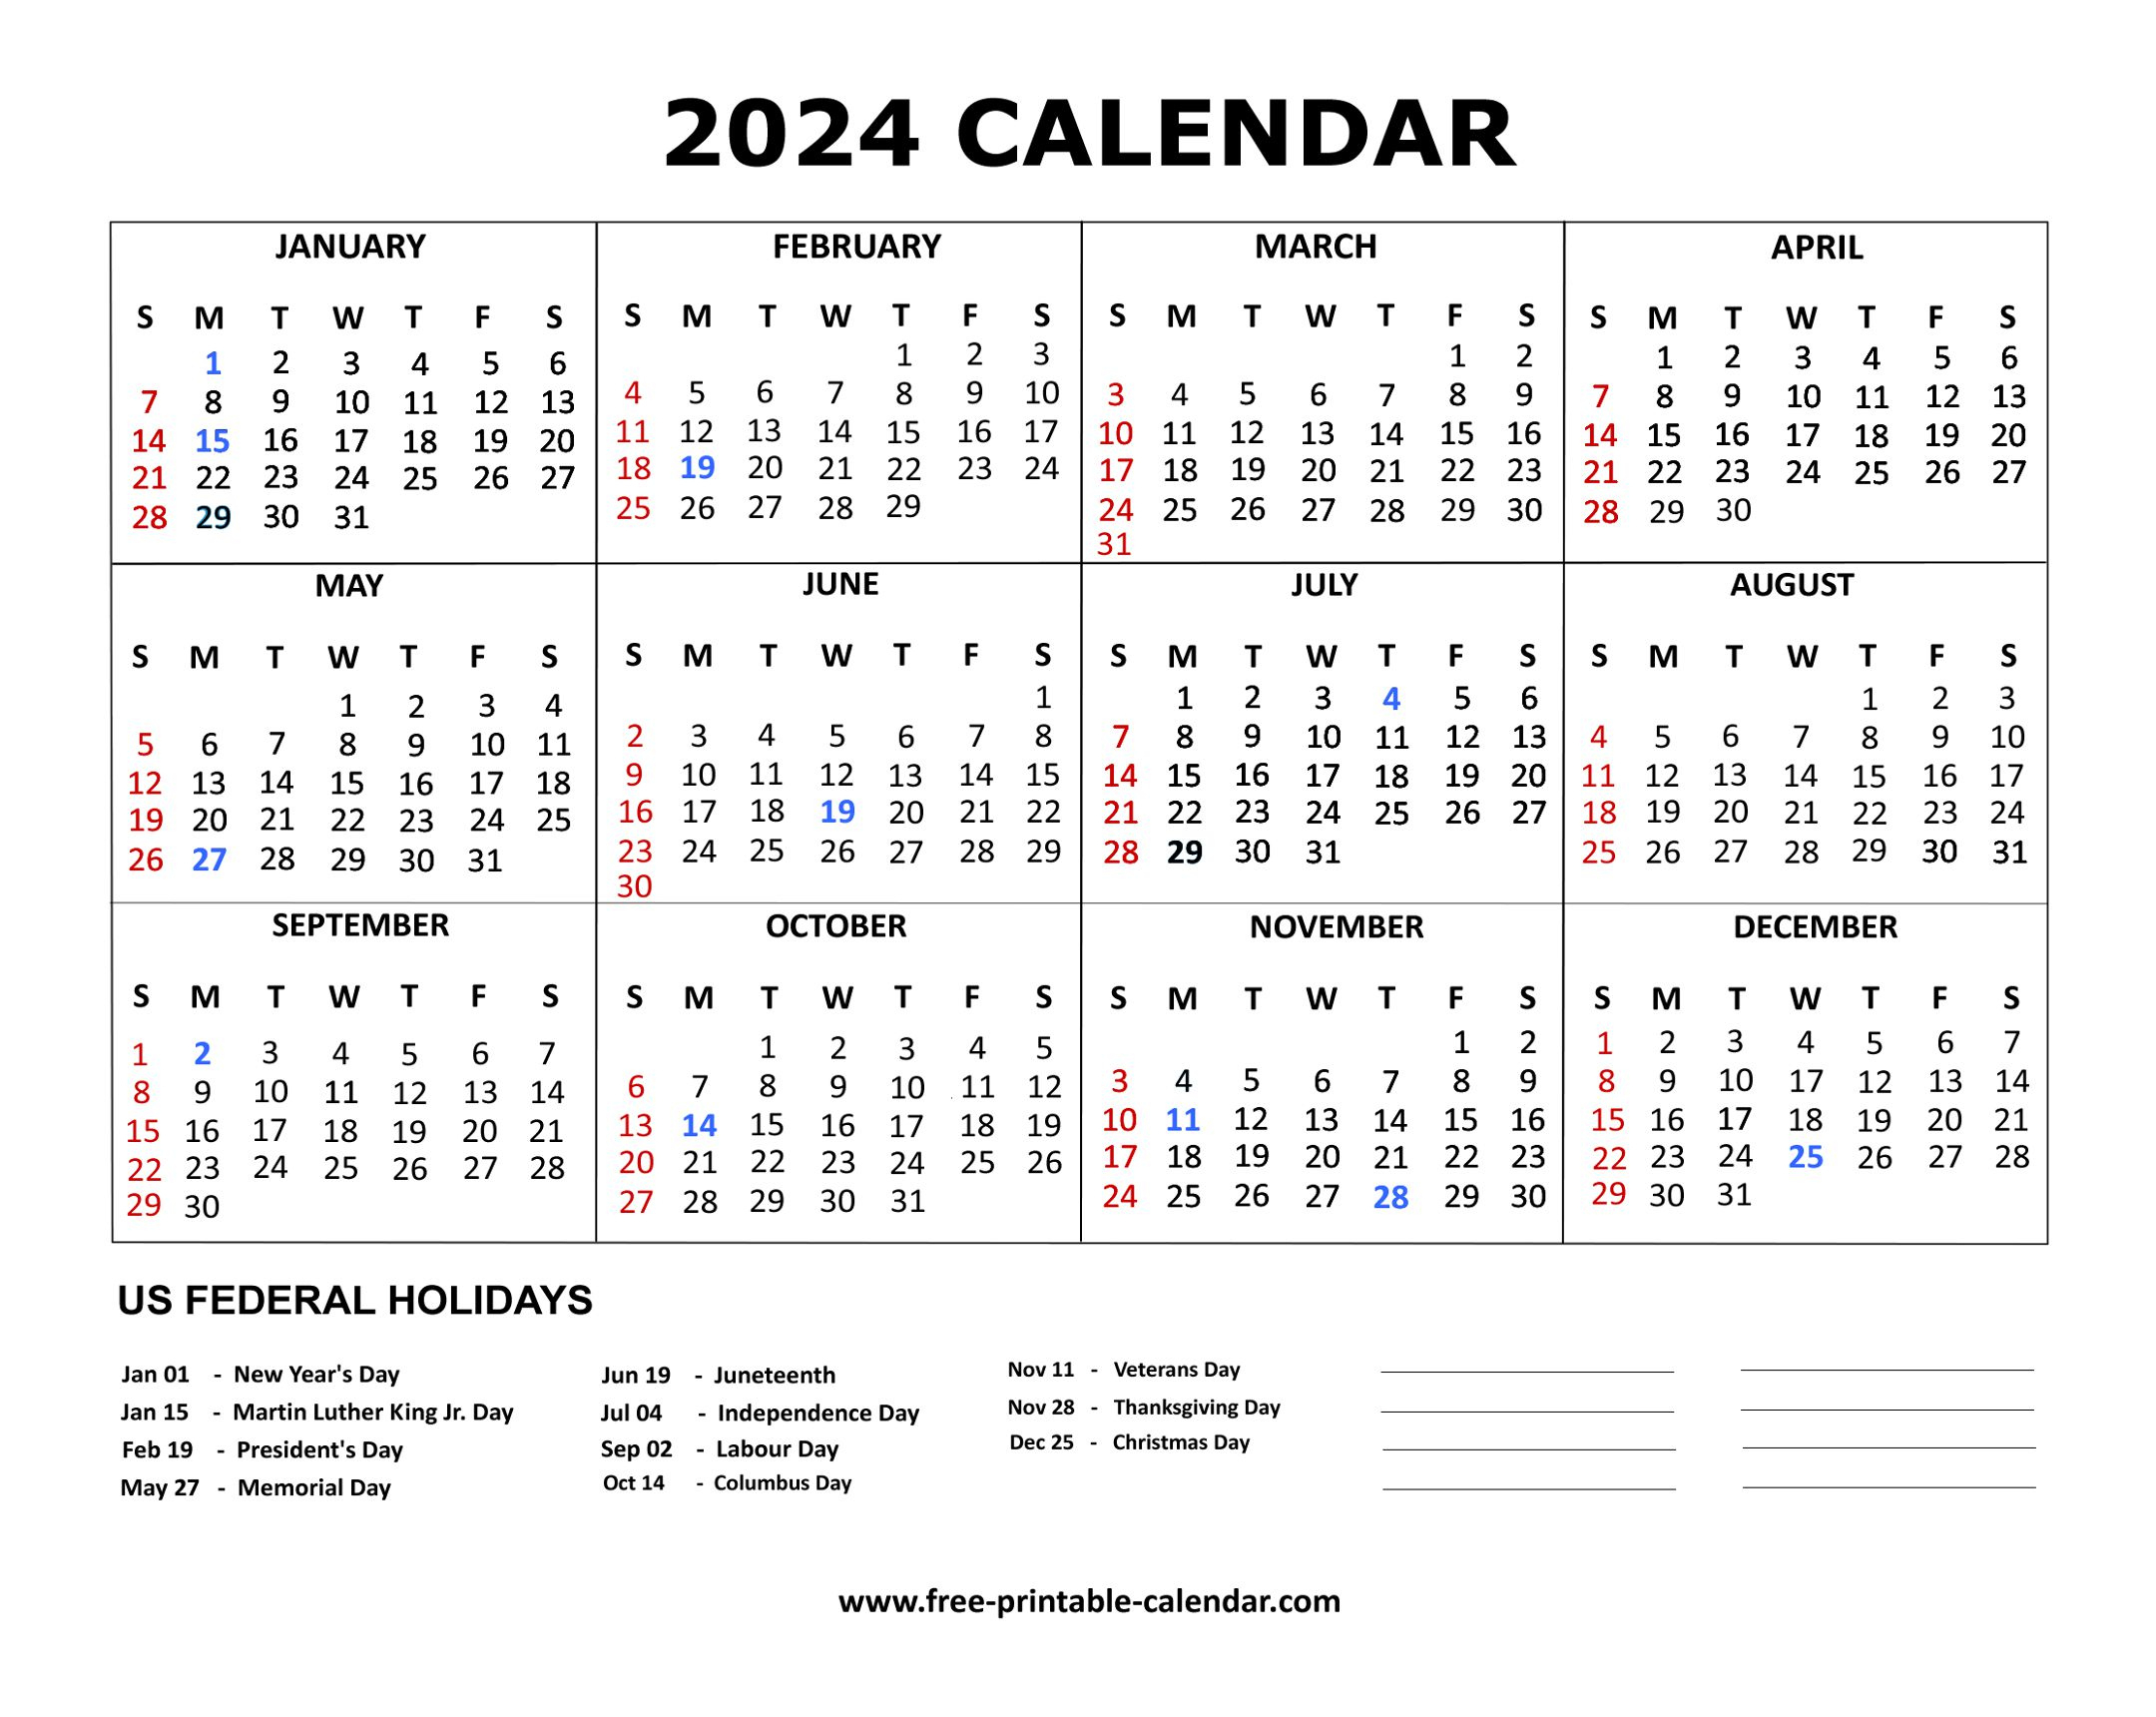 2024 Calendar | Free Printable Calendar 2024 Usa